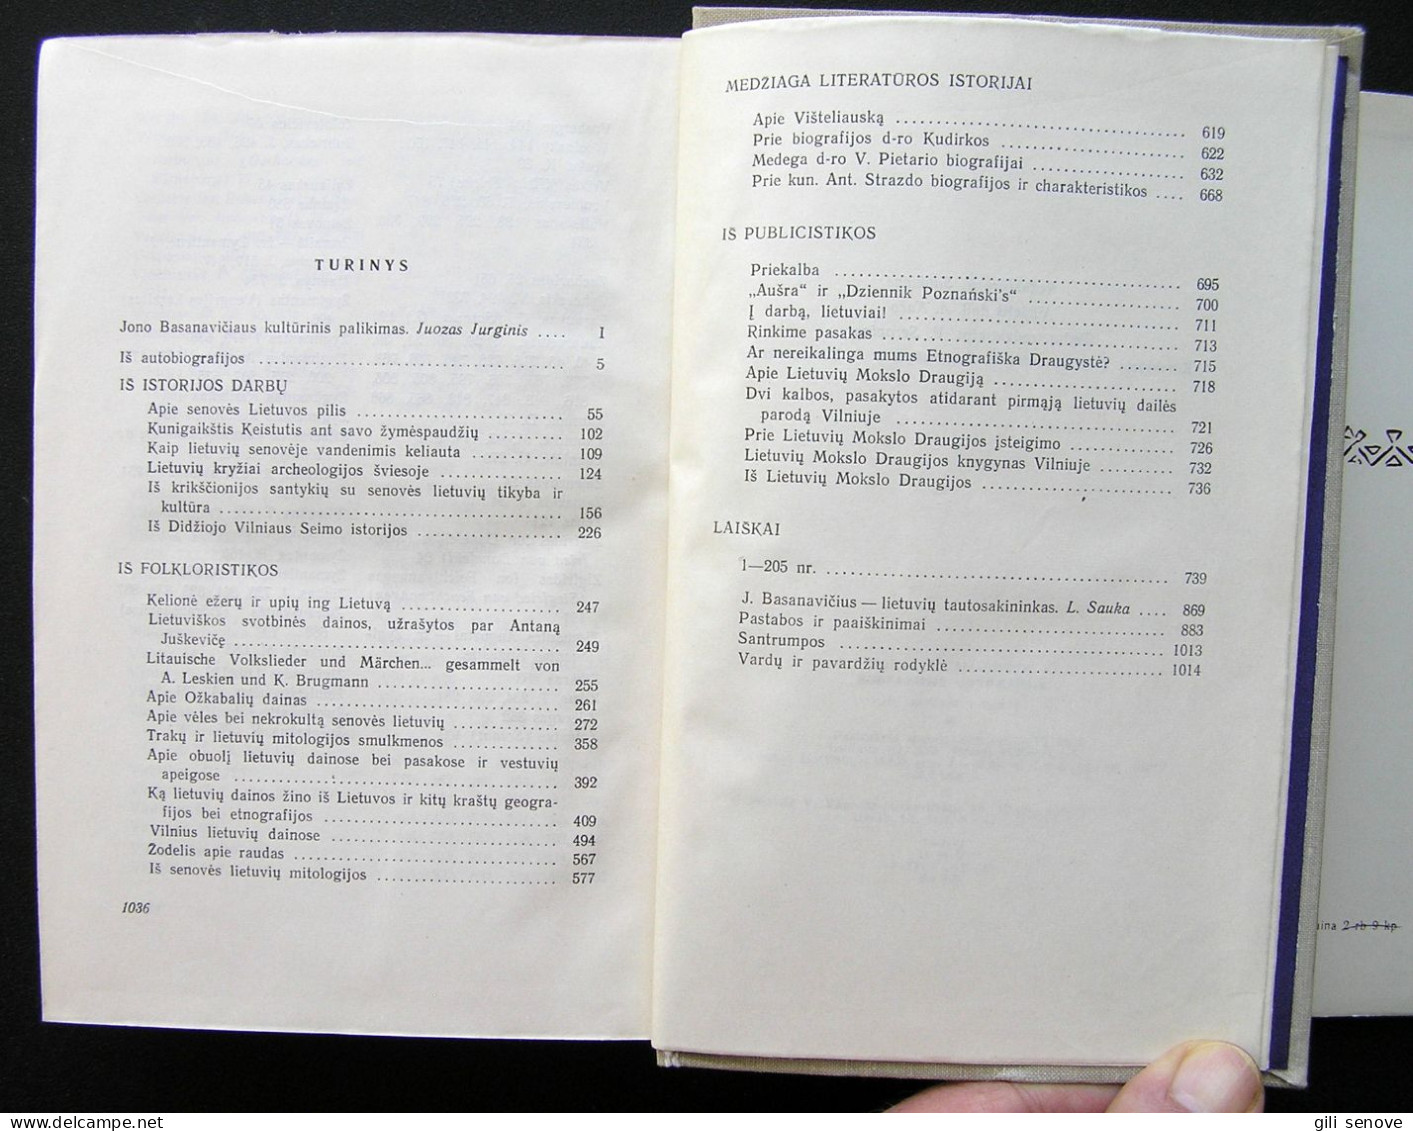 Lithuanian Book / Rinktiniai Raštai By Basanavičius 1970 - Cultural